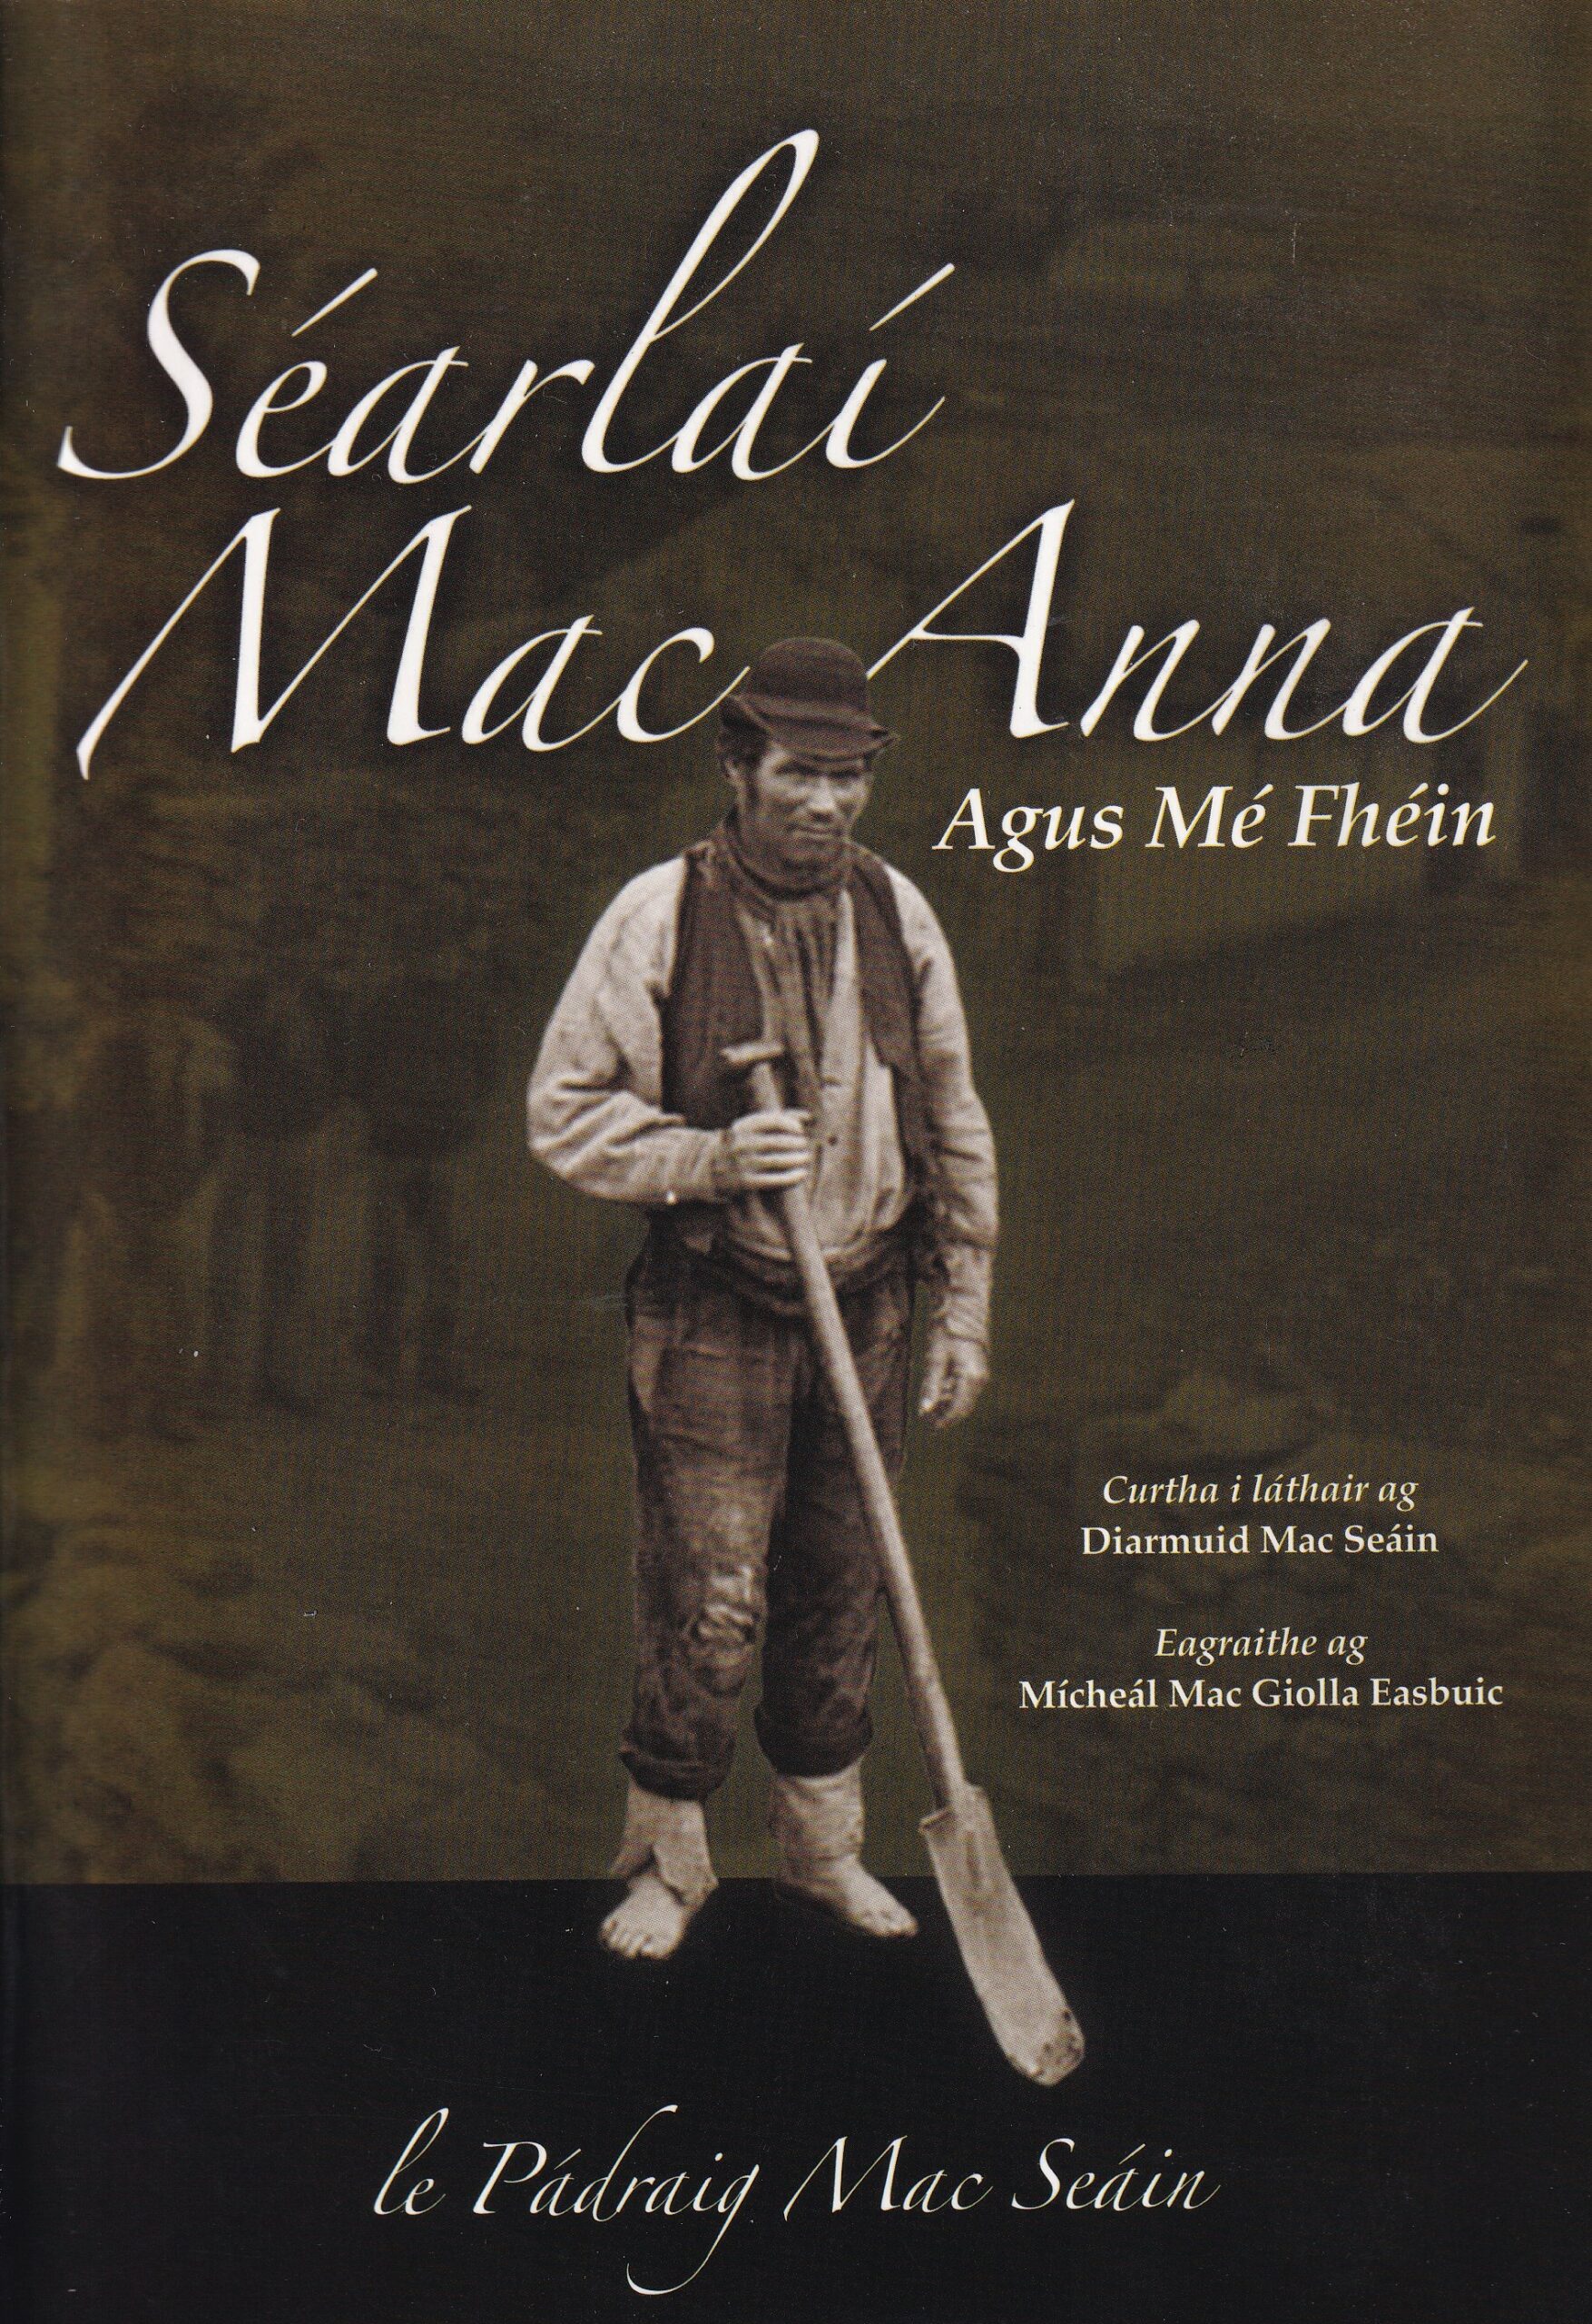 Séarlaí Mac Anna agus Mé Fhéin by Diarmuid Mac Seáin (ed.)